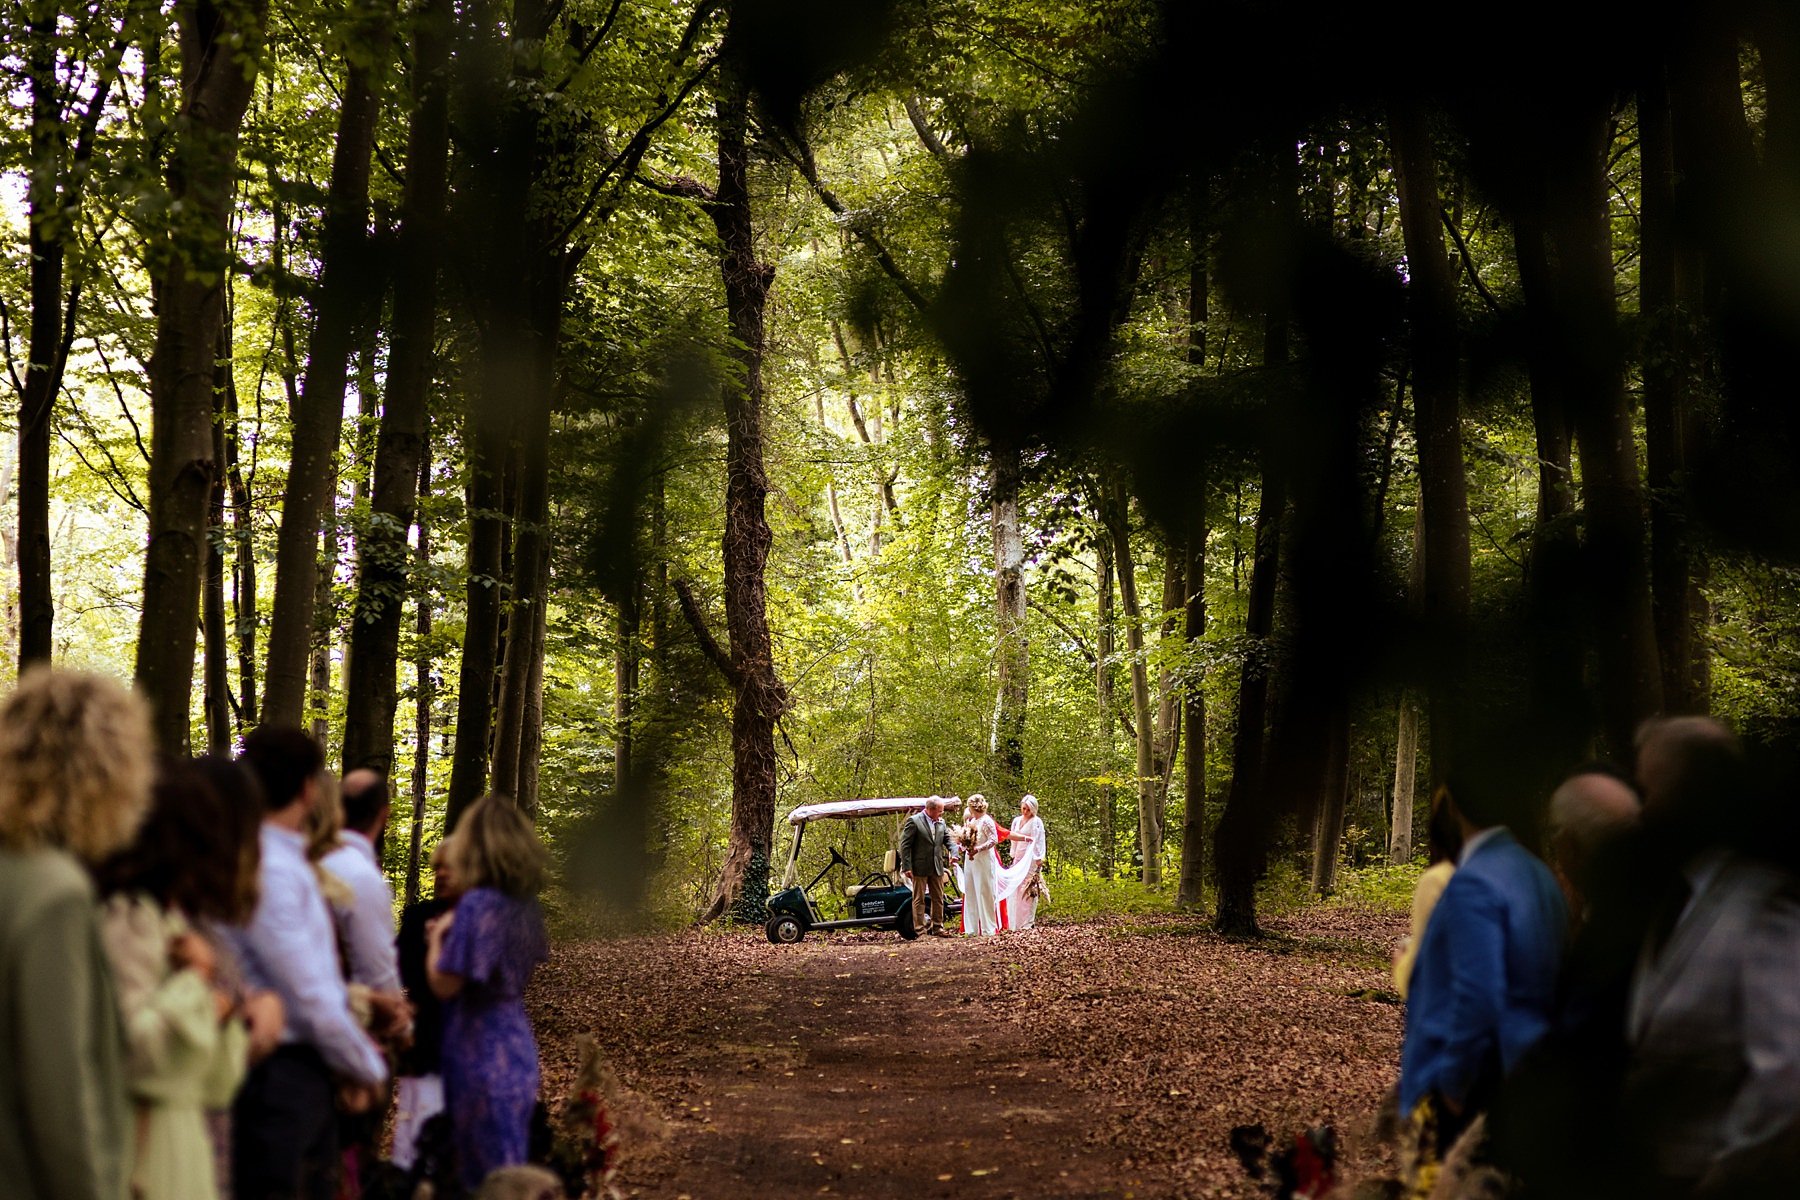 evenley-wood-garden-wedding-in-the-woods_0020.jpg